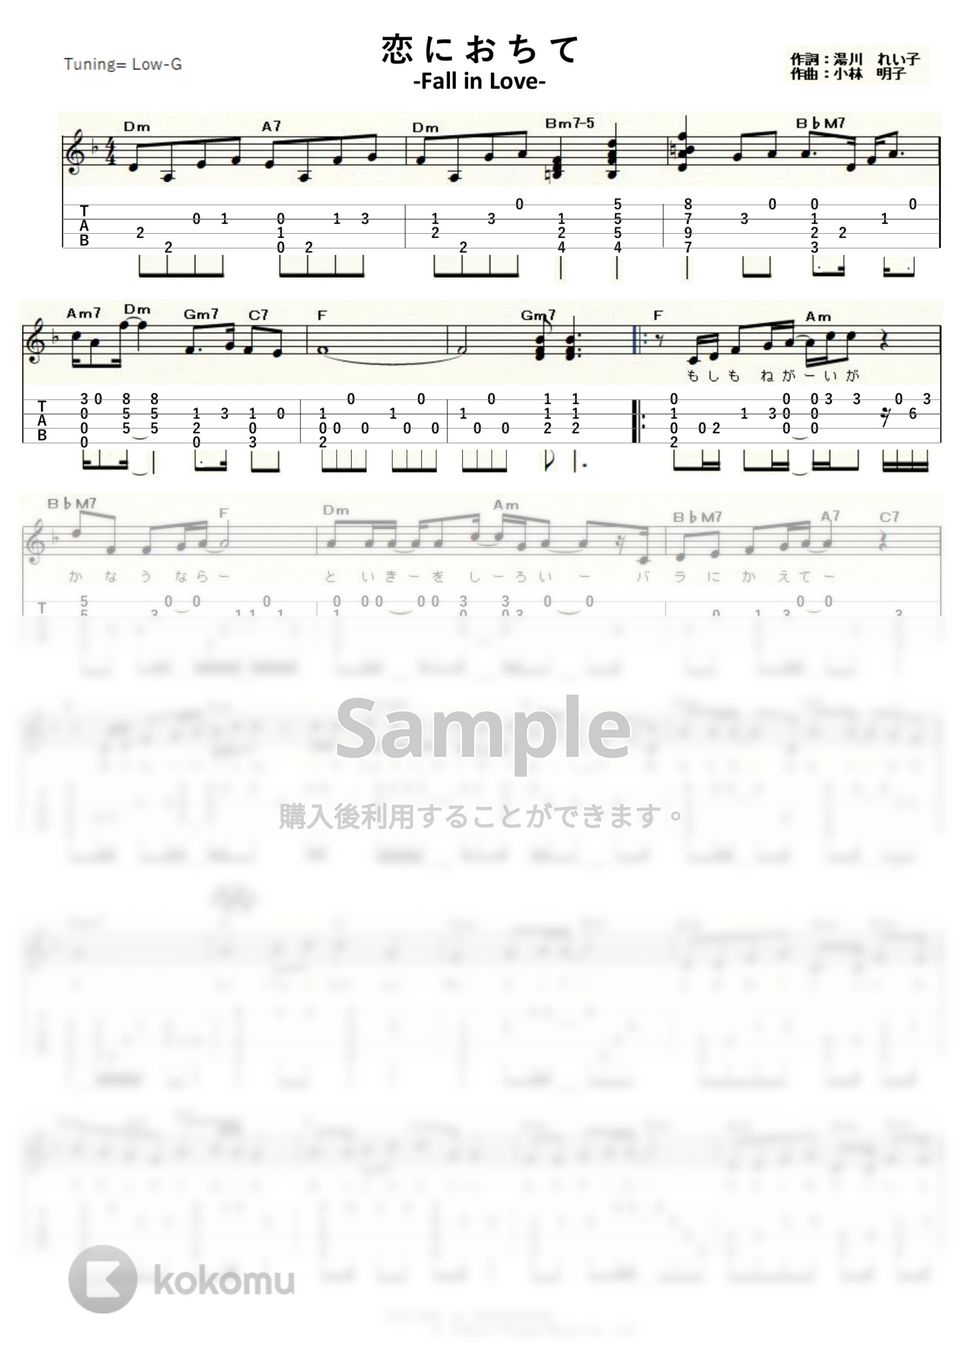 小林明子 - 恋におちて (ｳｸﾚﾚｿﾛ/Low-G/中級) by ukulelepapa